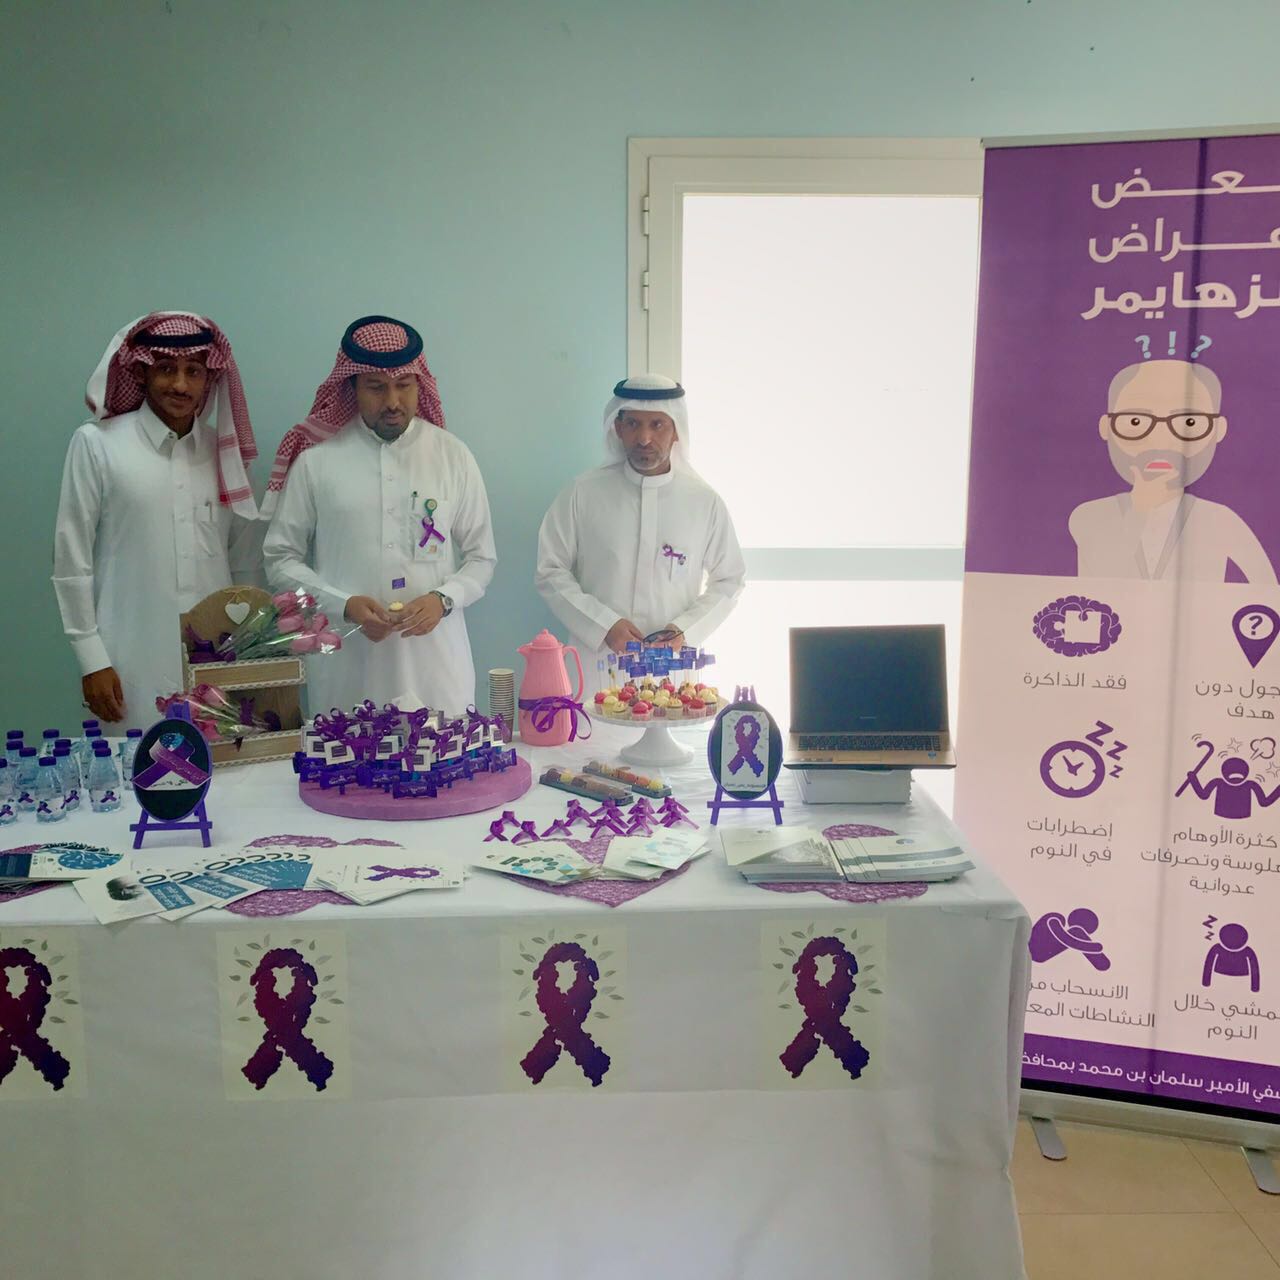 مستشفى الأمير سلمان بن محمد بالدلم يقيم فعالية اليوم العالمي للزهايمر